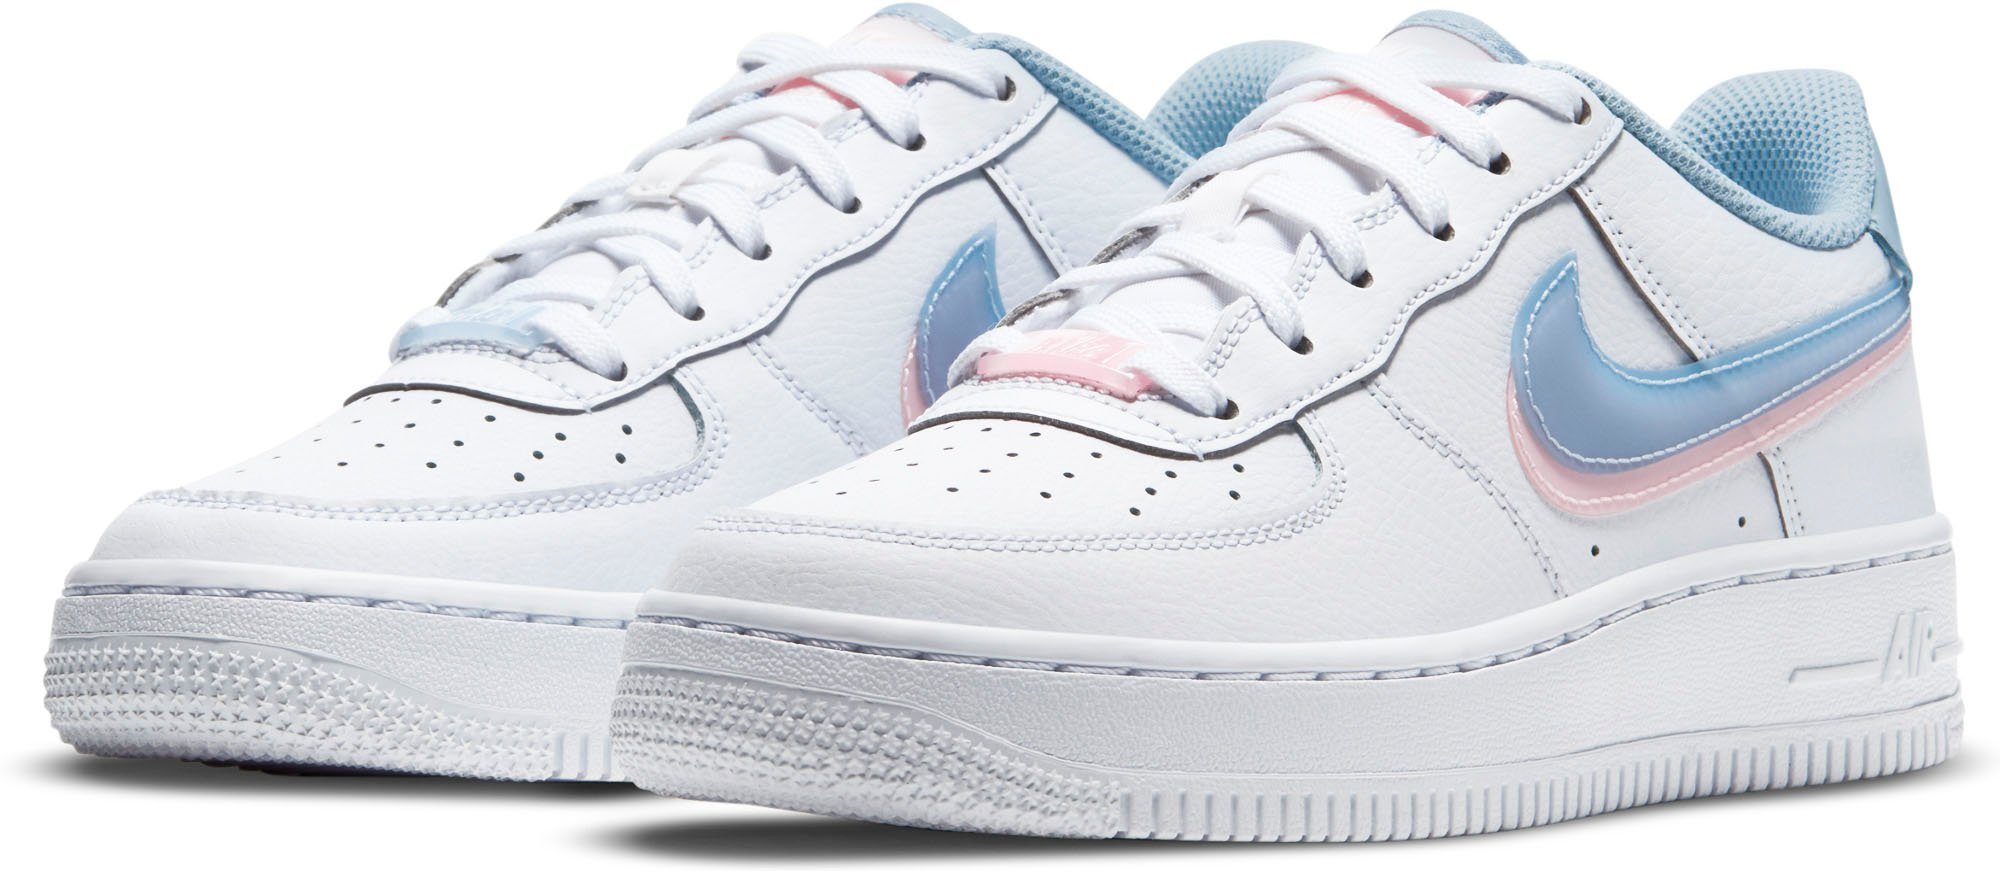 Nike Sportswear »AIR FORCE 1 LV8« Sneaker kaufen | OTTO